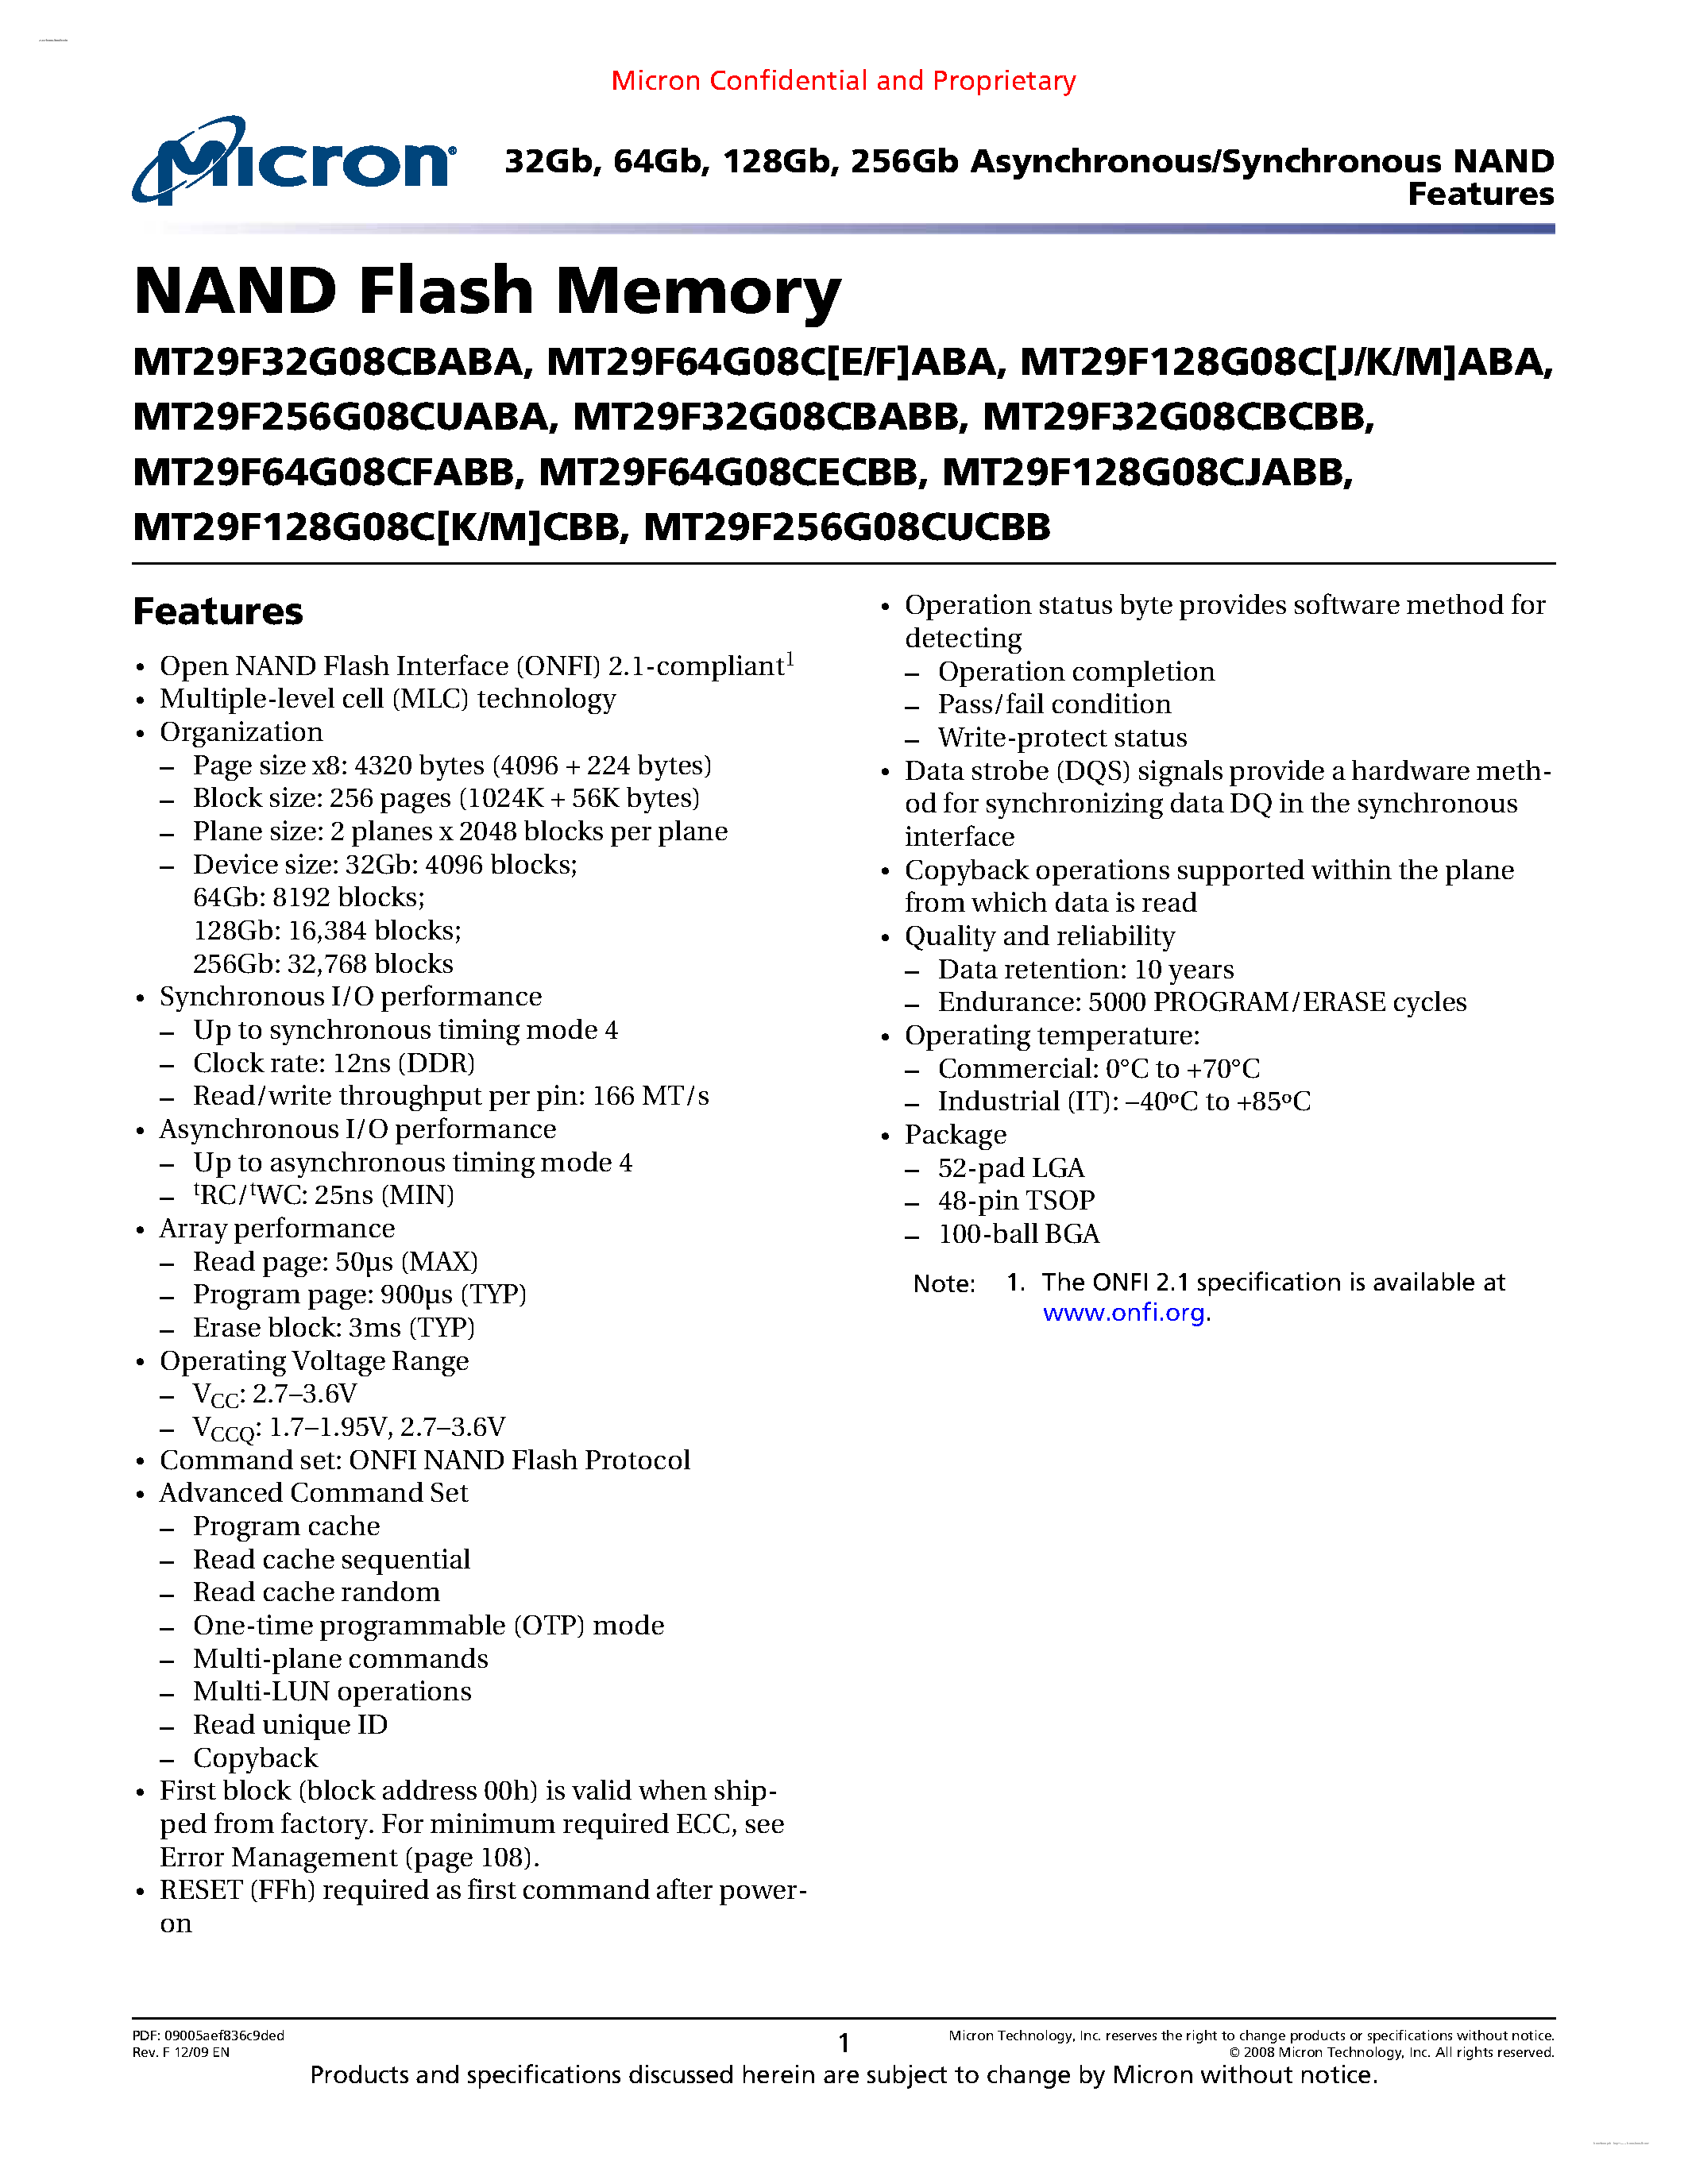 Даташит 29F32G08C - NAND Flash Memory страница 1